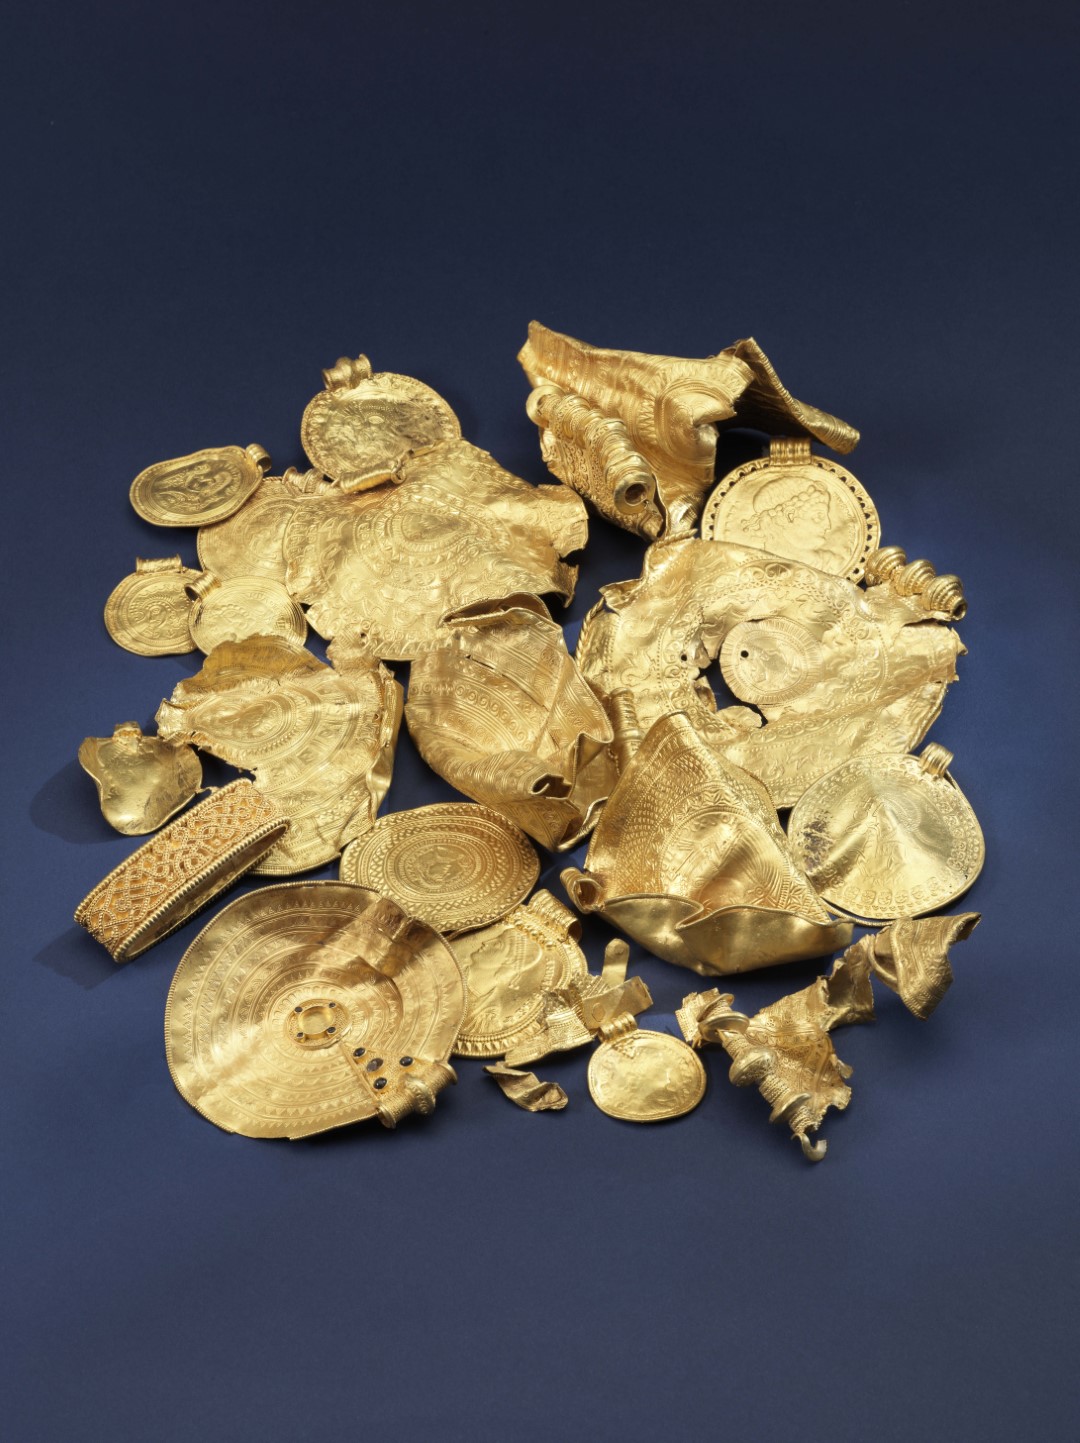 Detektorstudie über den Fund eines römischen Goldschatzes enthüllt ein Netzwerk europäischer Eliten